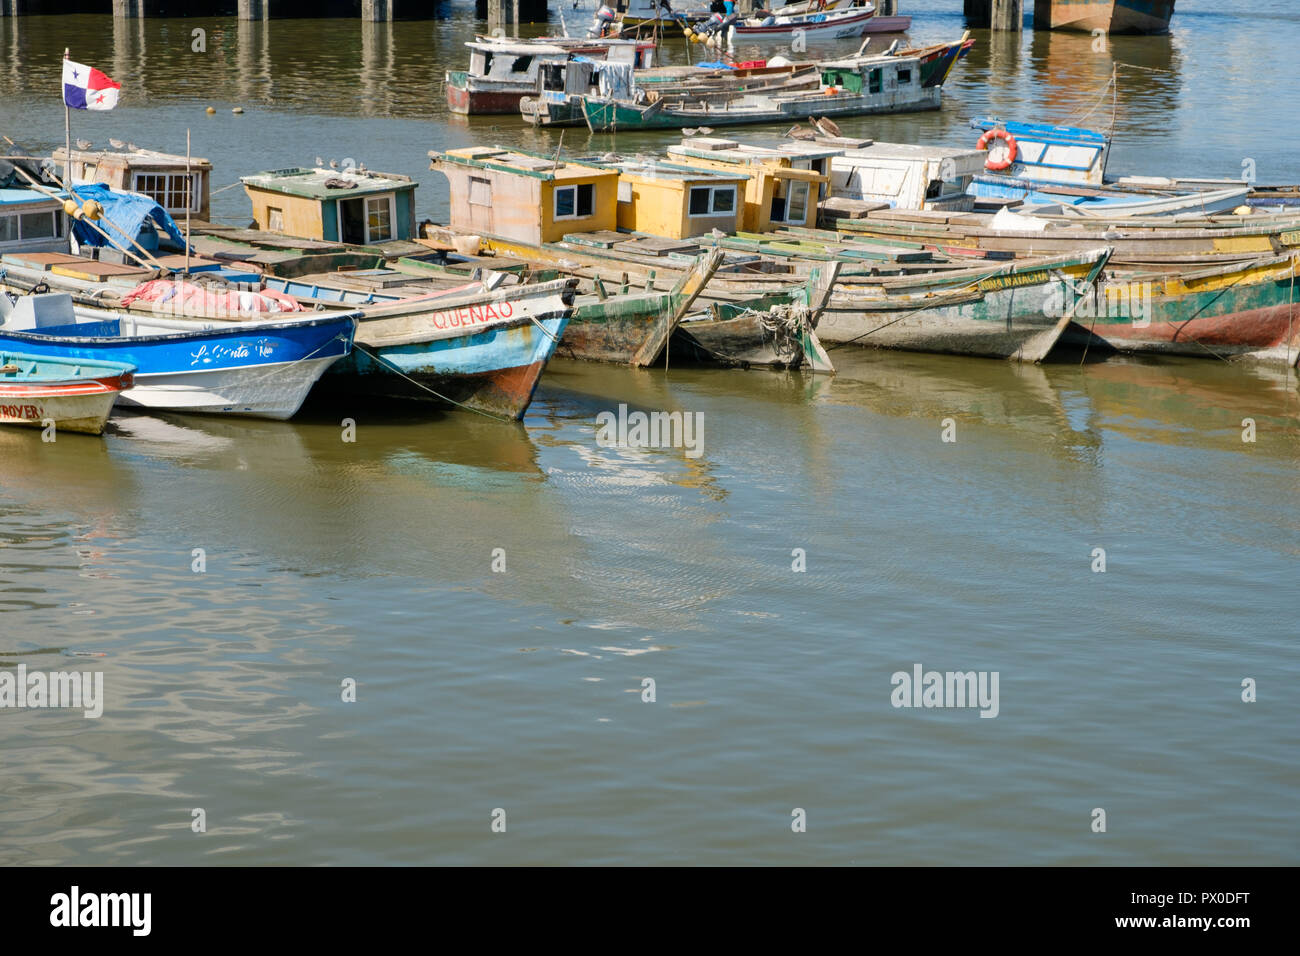 Panama City, Panama - März 2018: Fischerboote in der Nähe von Fischmarkt in Panama City mit Skyline im Hintergrund Stockfoto